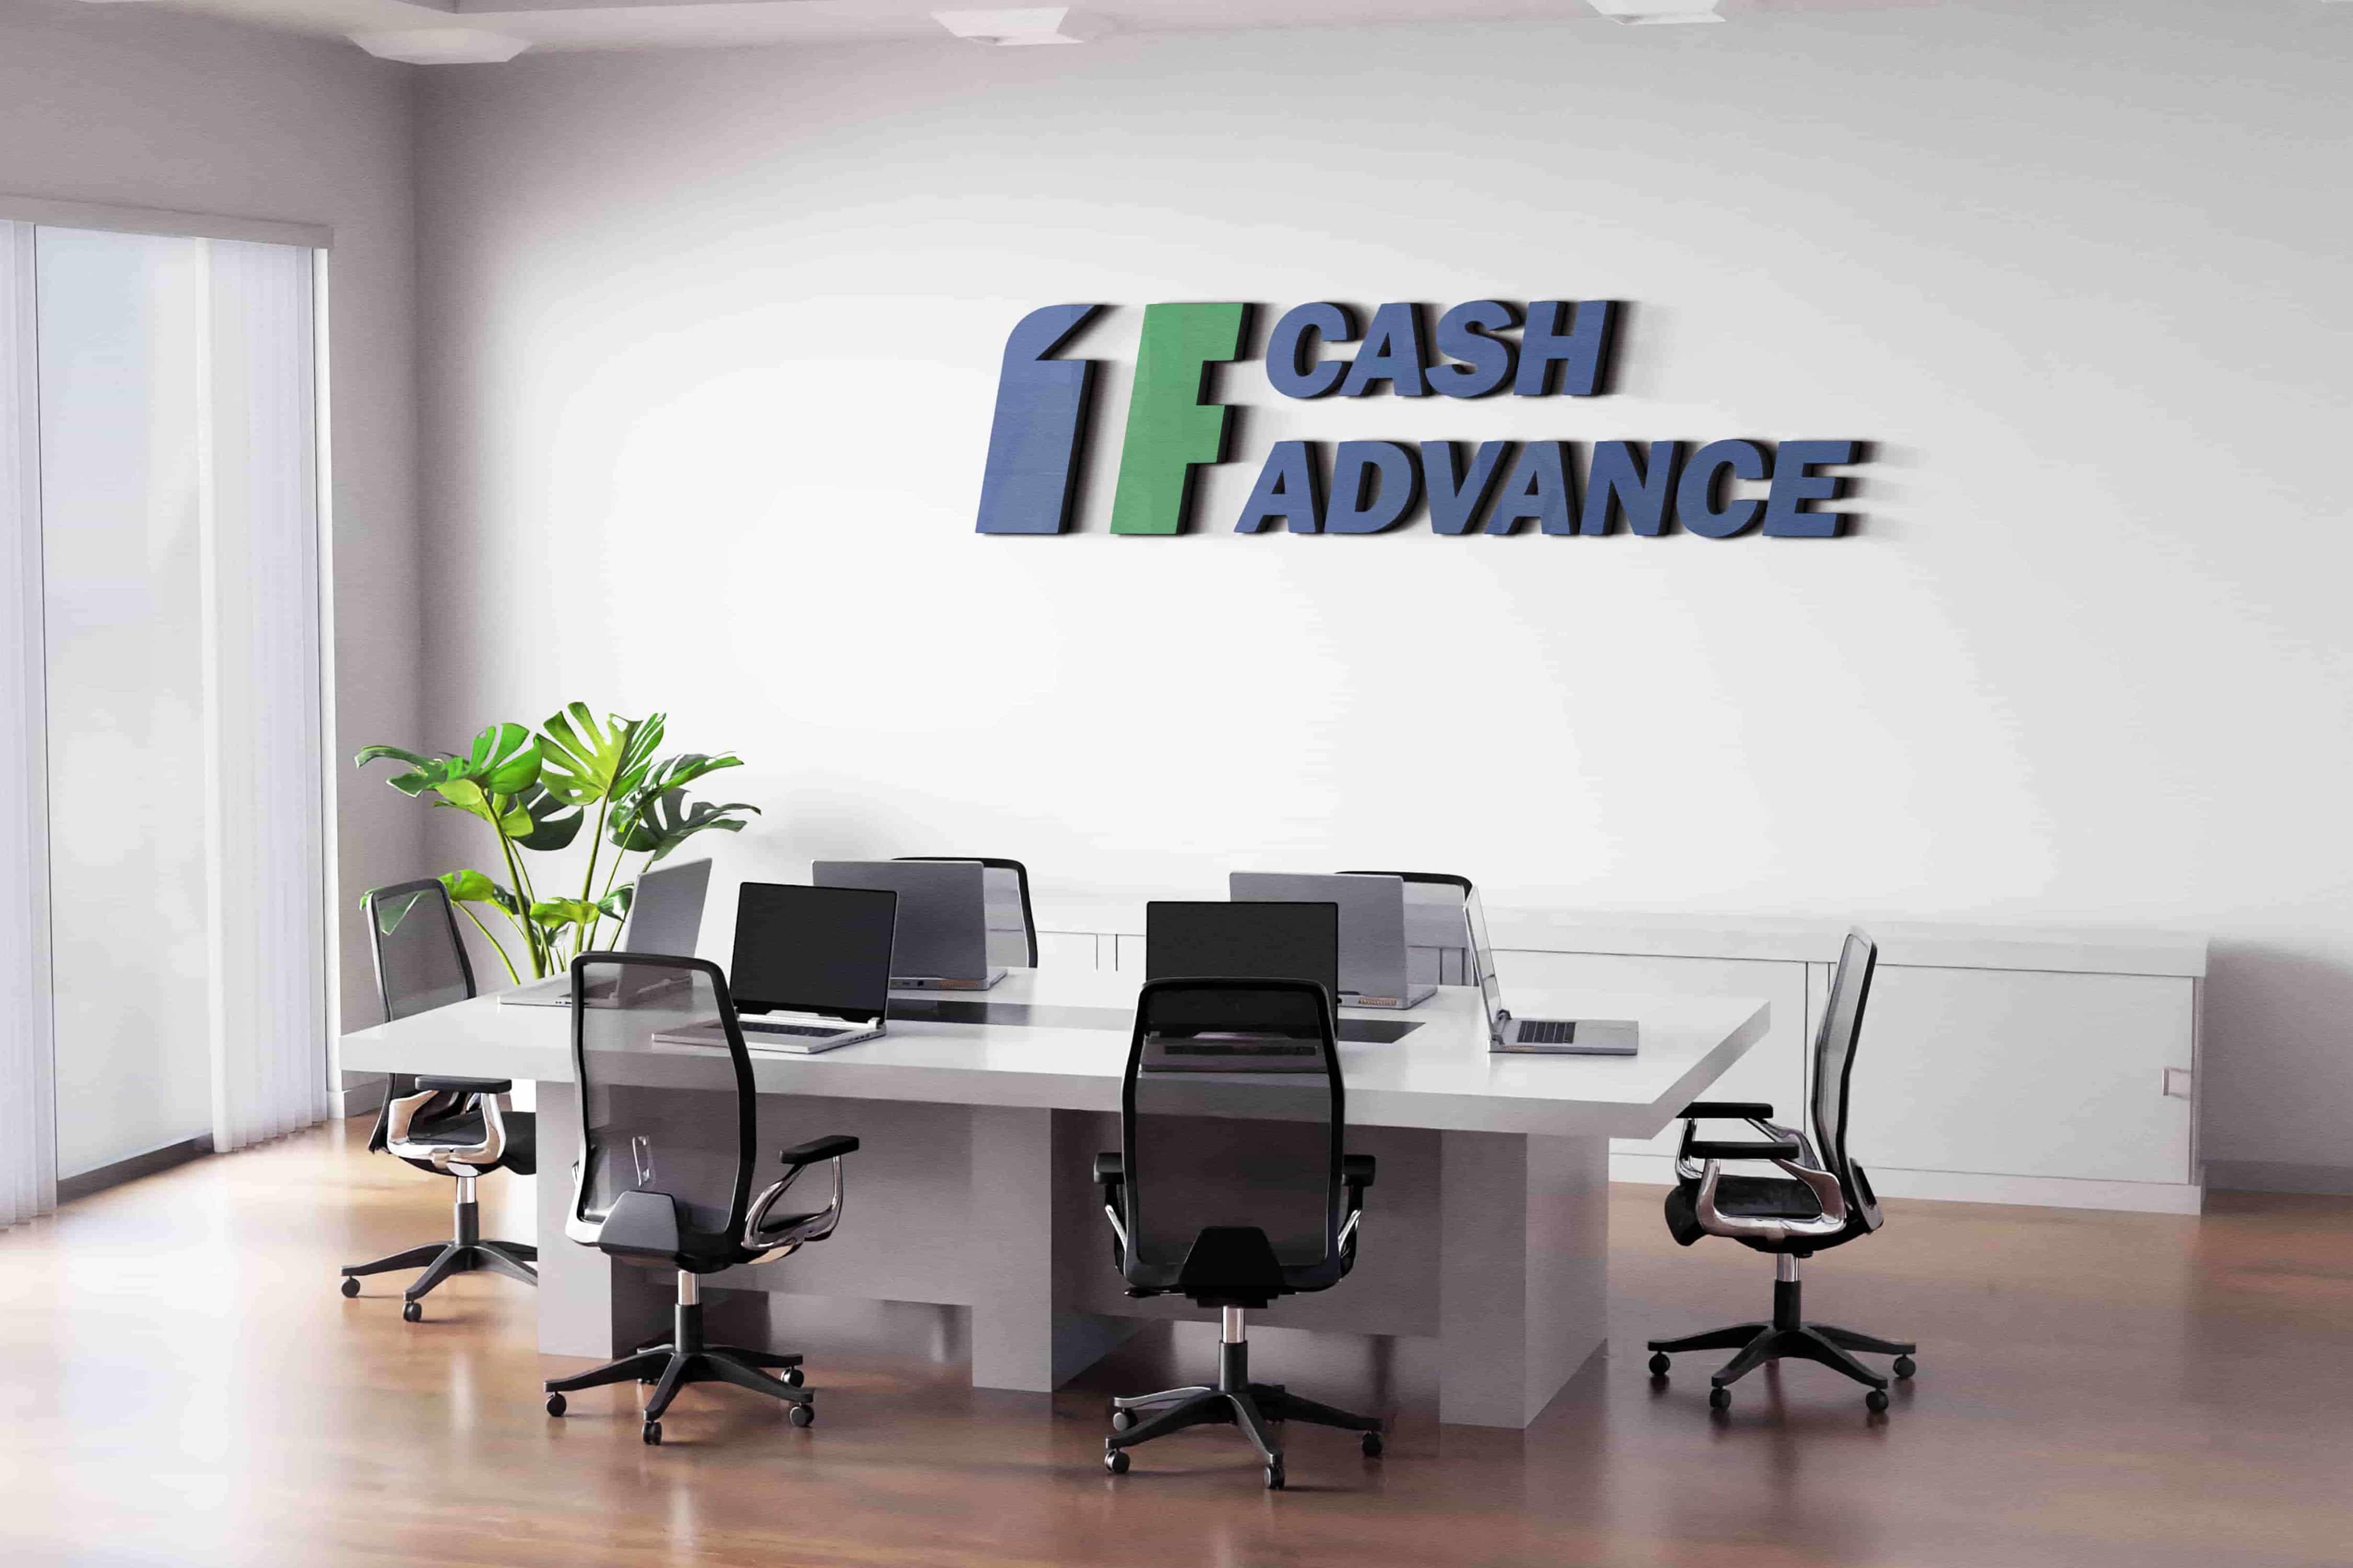 1F Cash Advance payday loans in Lafayette, LA